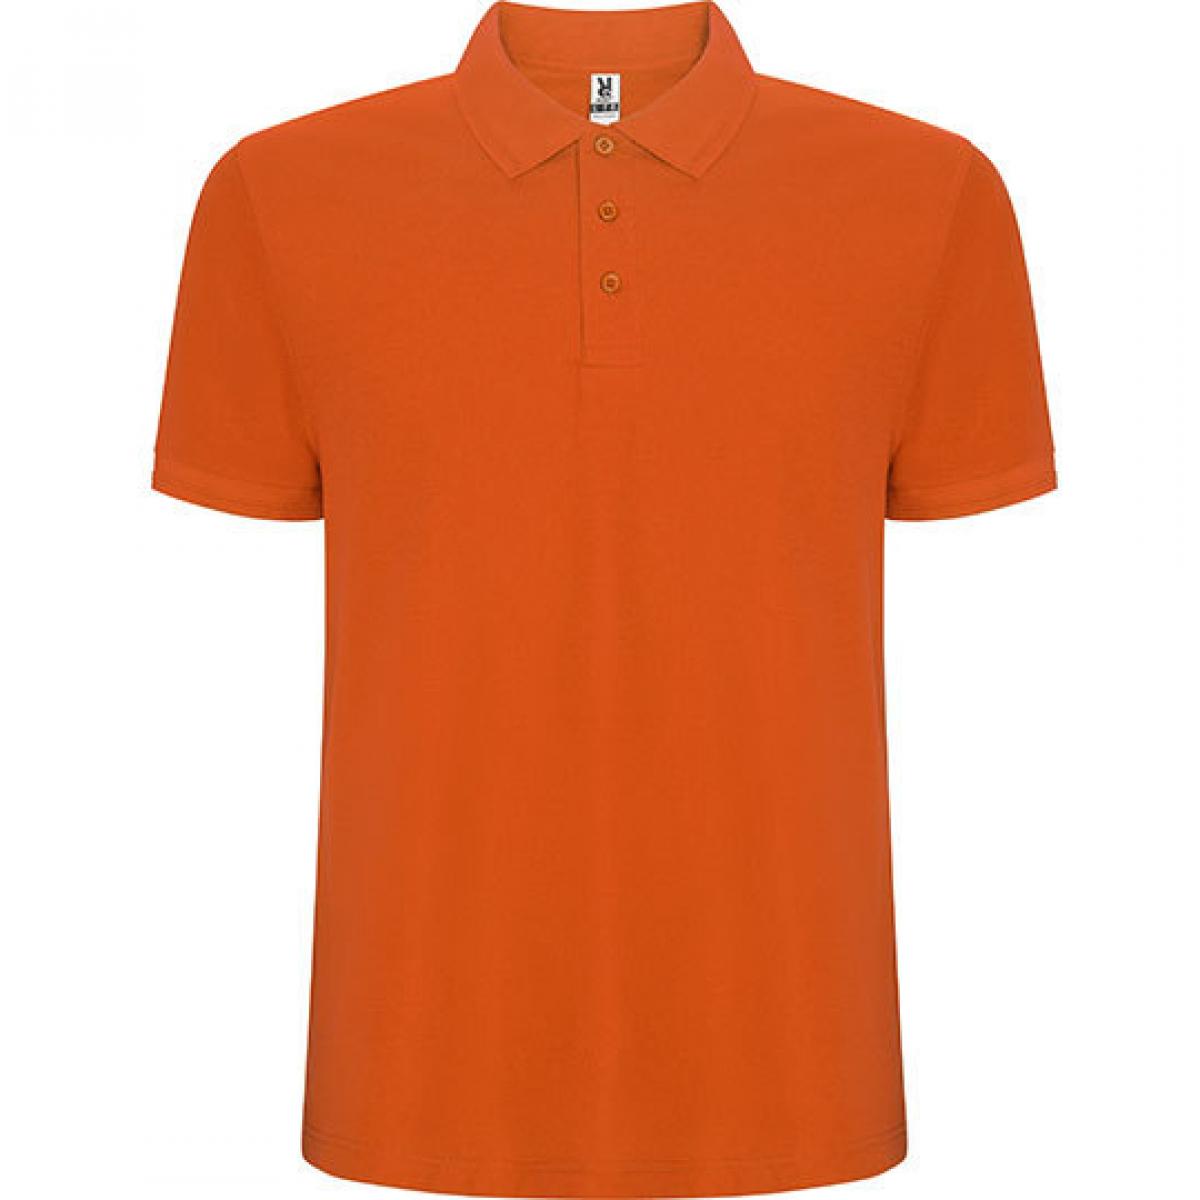 Hersteller: Roly Herstellernummer: PO6609 Artikelbezeichnung: Pegaso Premium Poloshirt - Piqué Farbe: Orange 31